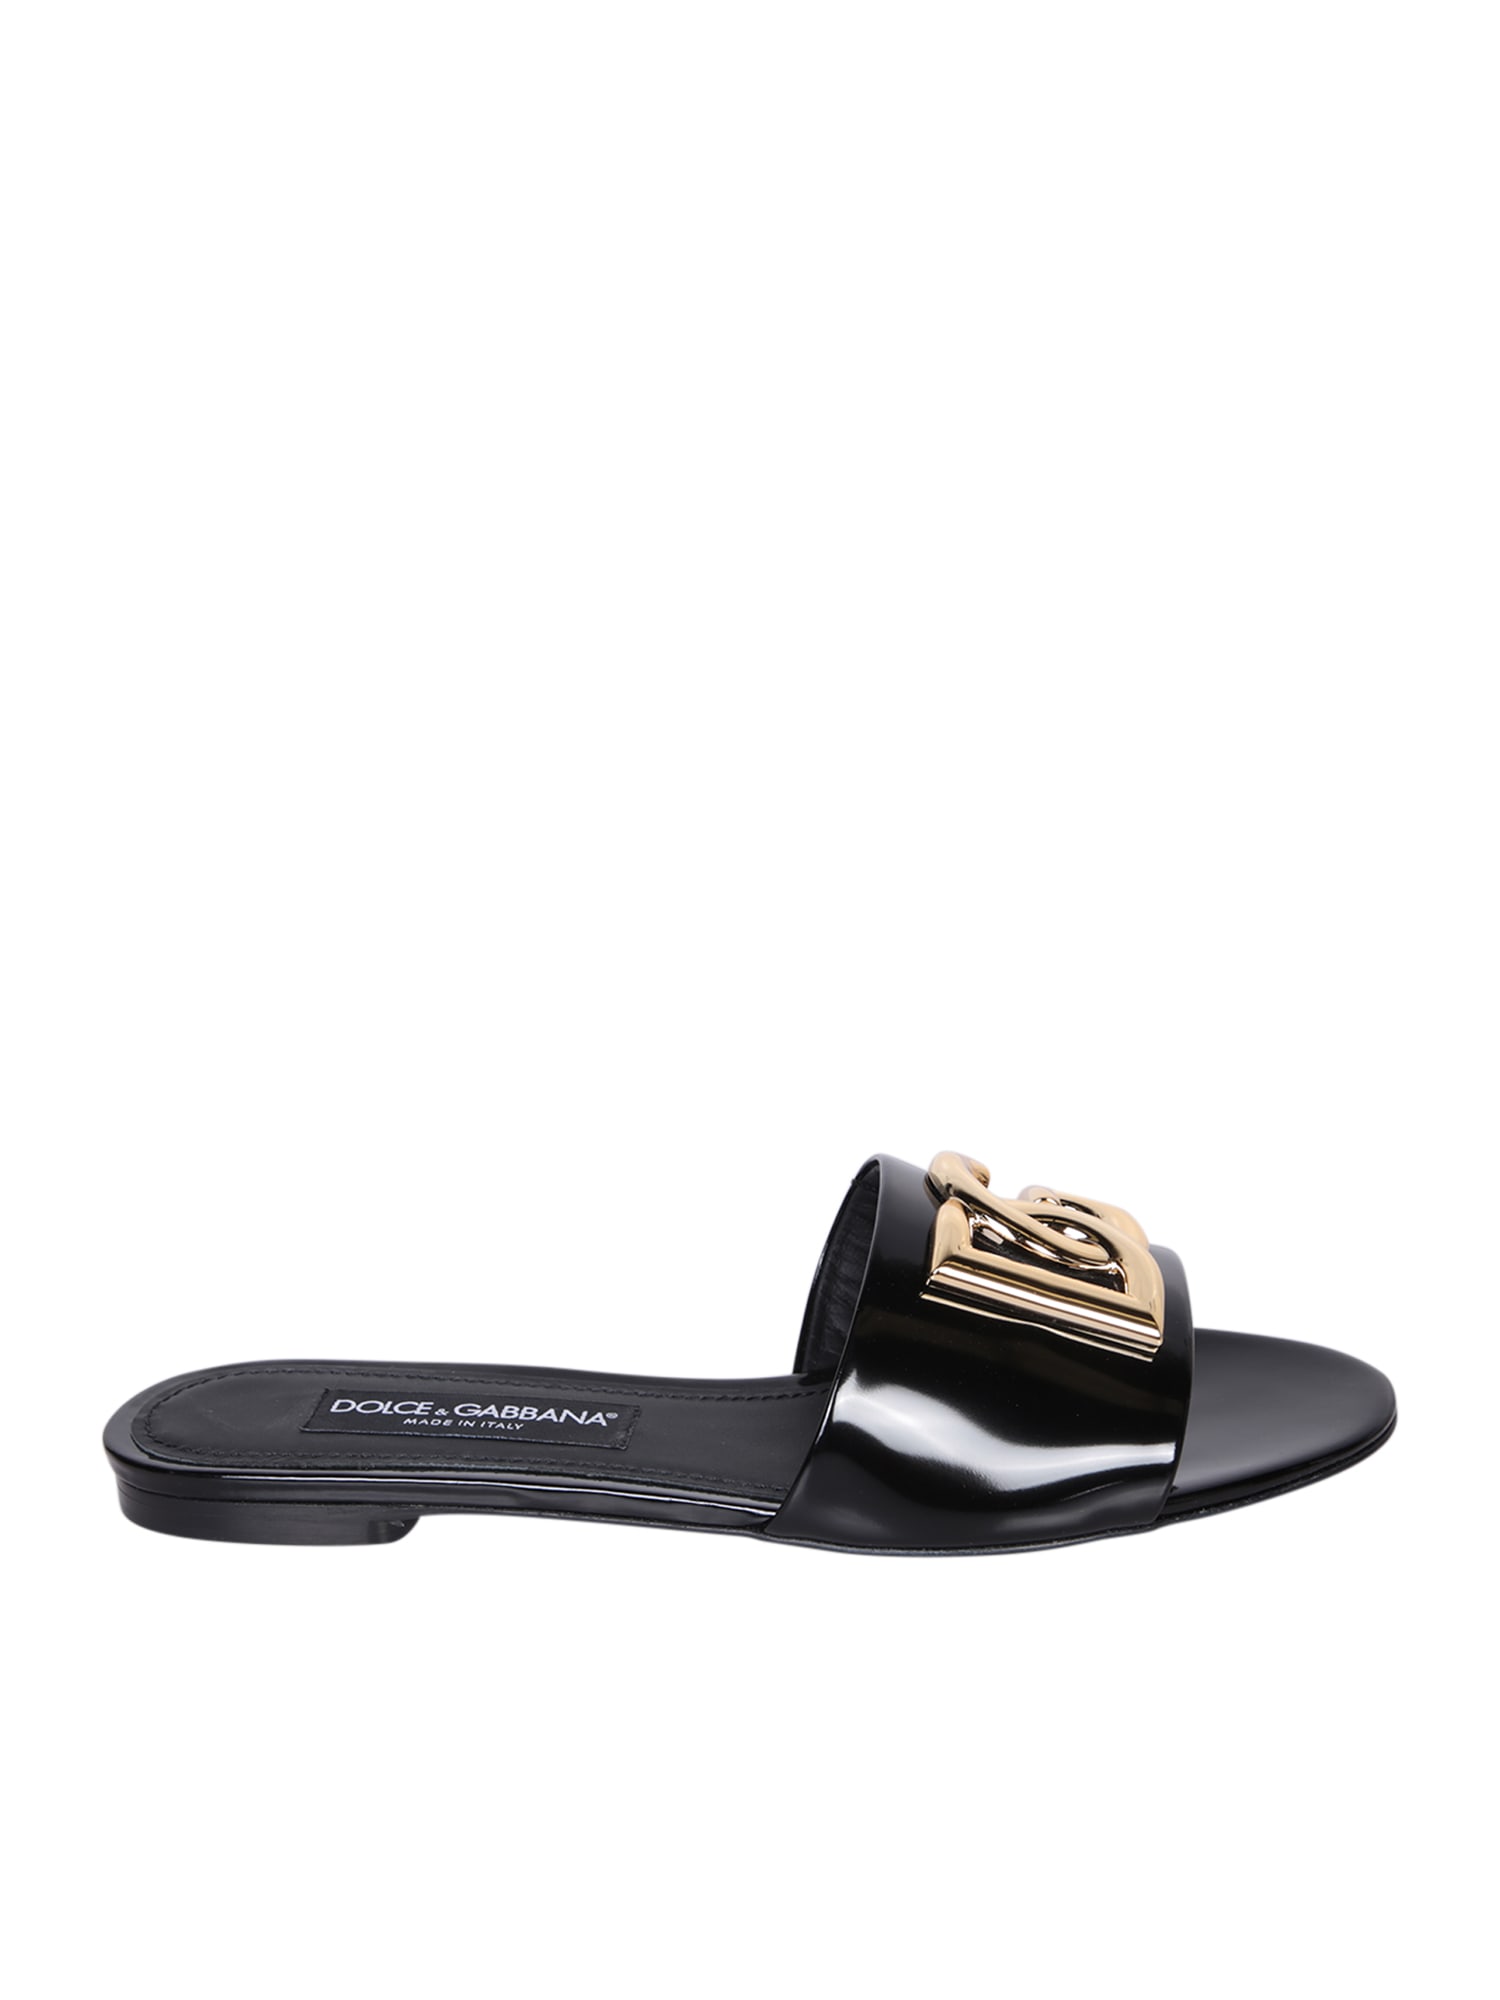 Dolce & Gabbana Black Slide Sandals